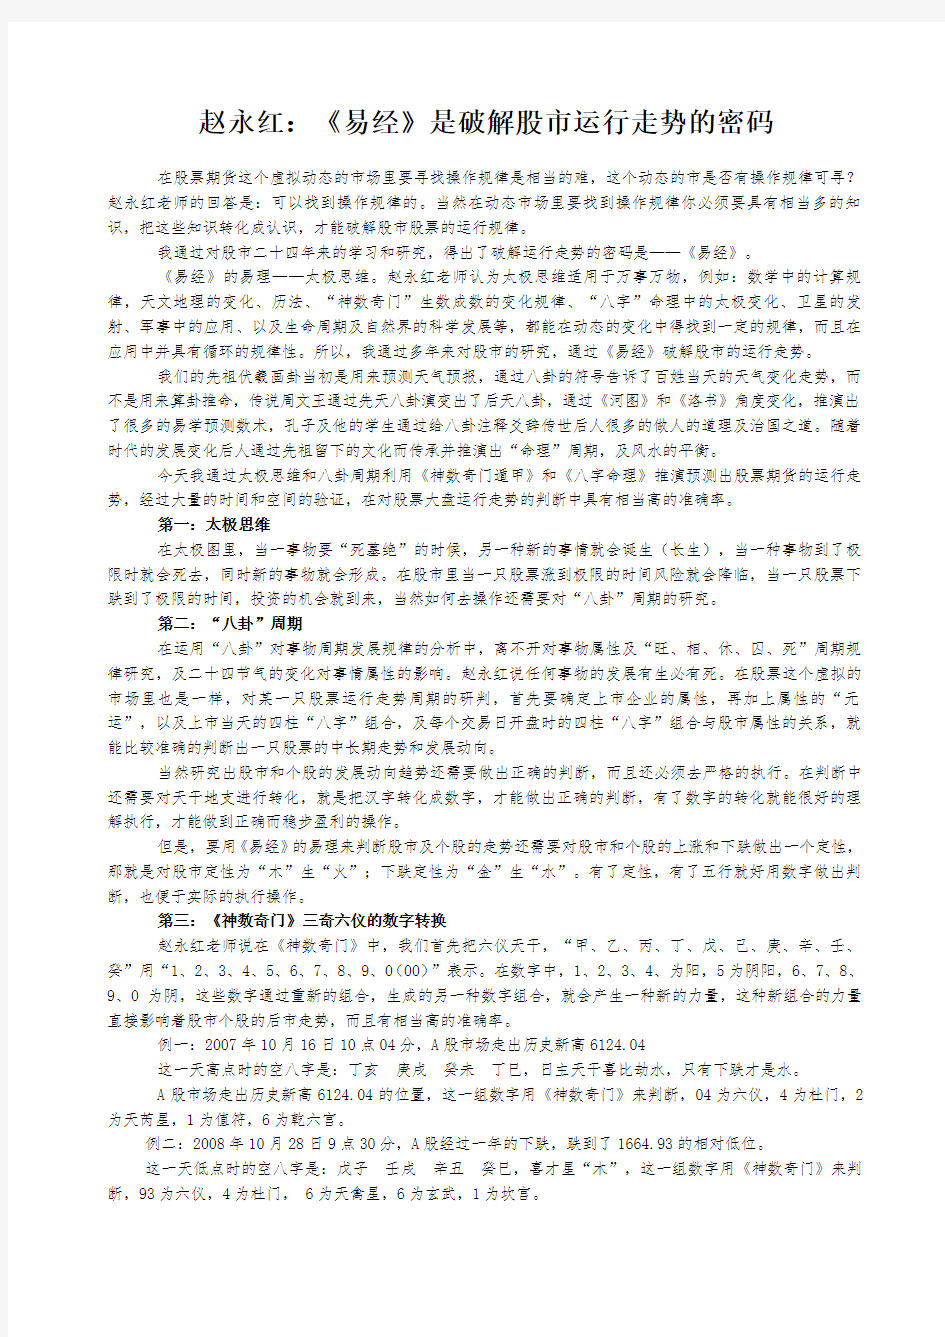 赵永红《易经》是破解股票运行走势的密码